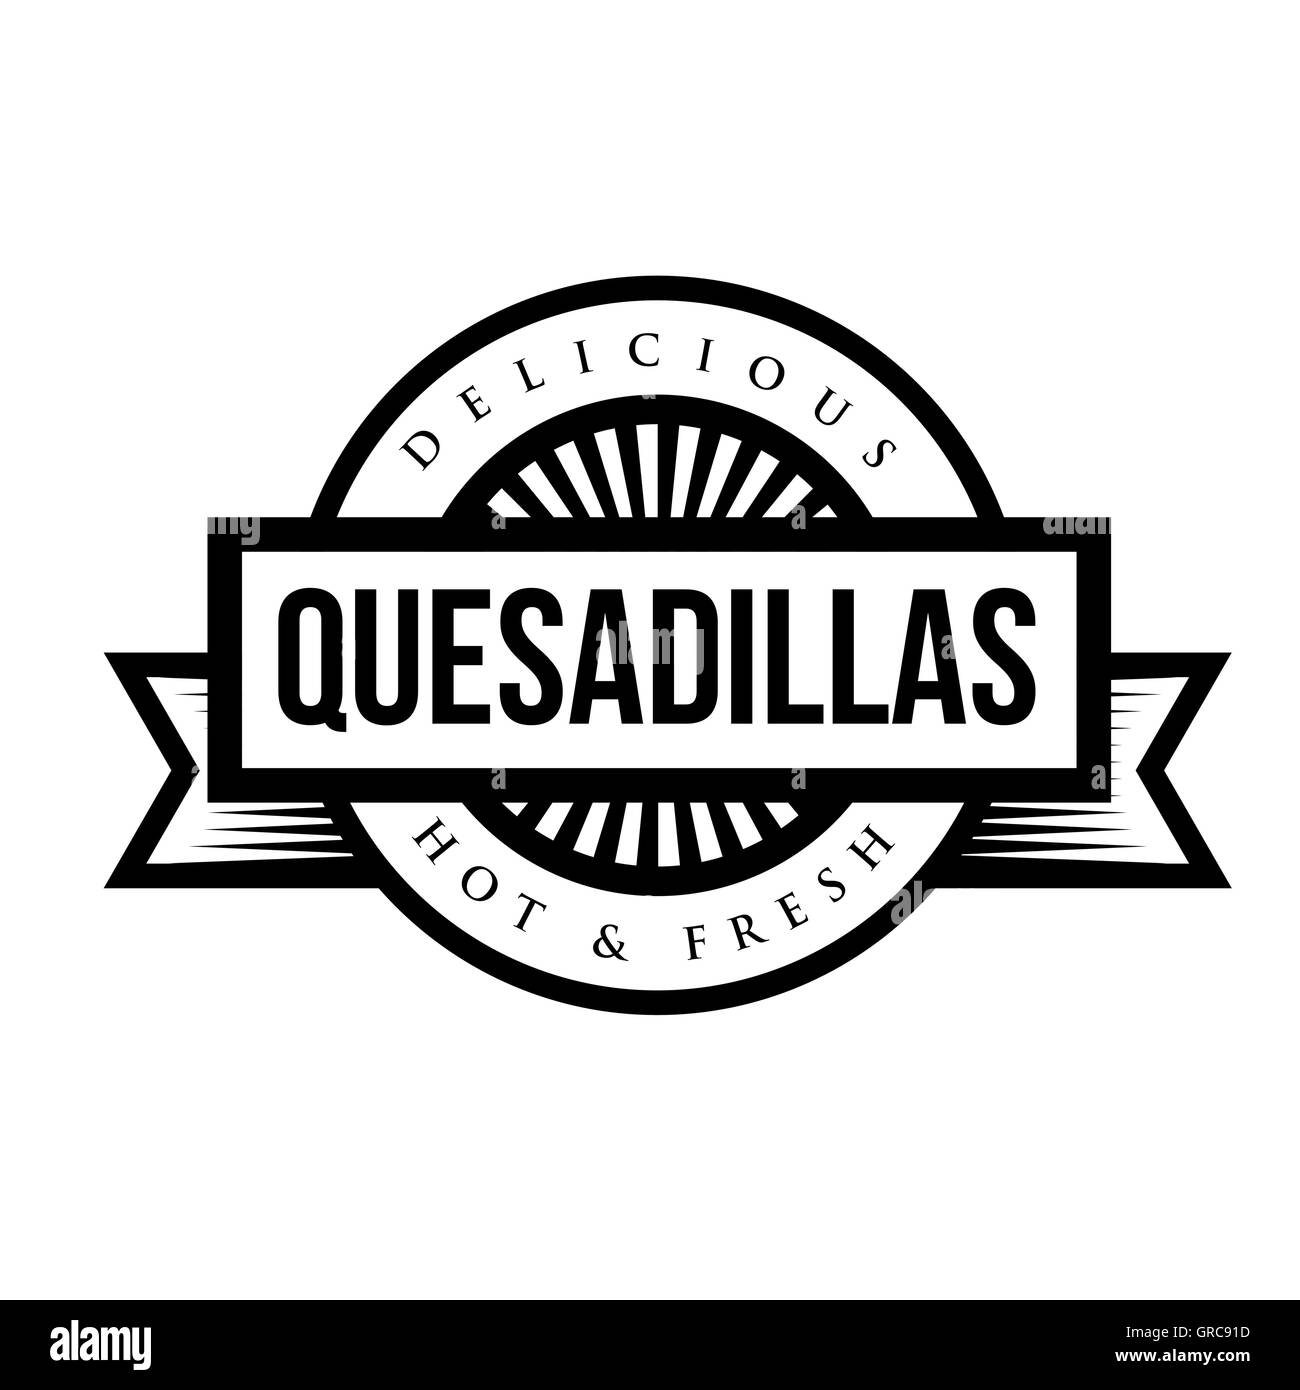 La cuisine mexicaine vintage sign - Quesadillas Illustration de Vecteur